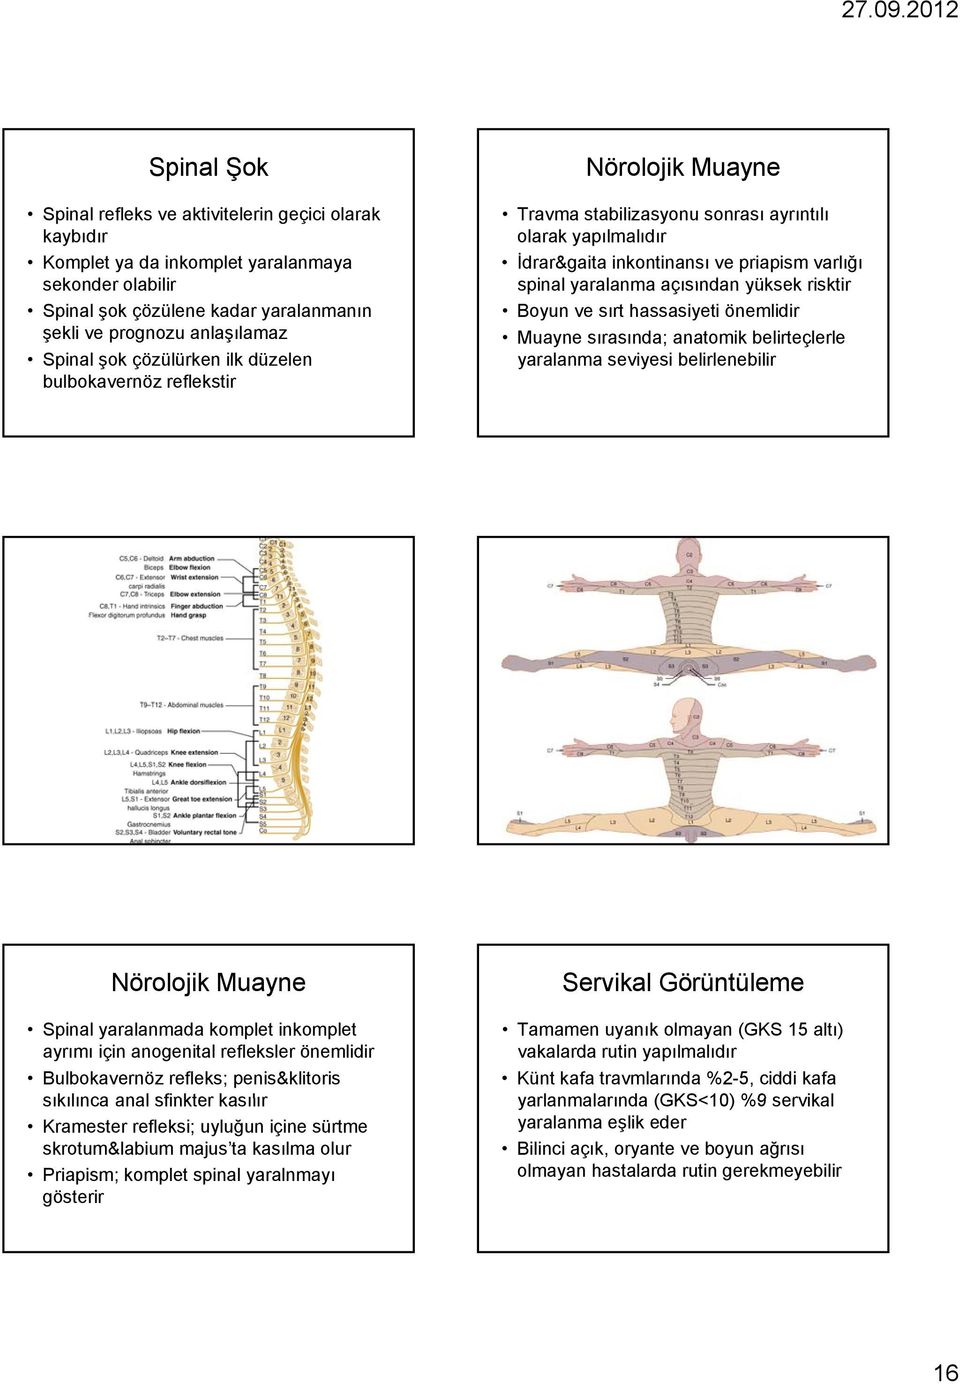 yüksek risktir Boyun ve sırt hassasiyeti önemlidir Muayne sırasında; anatomik belirteçlerle yaralanma seviyesi belirlenebilir Nörolojik Muayne Spinal yaralanmada komplet inkomplet ayrımı için